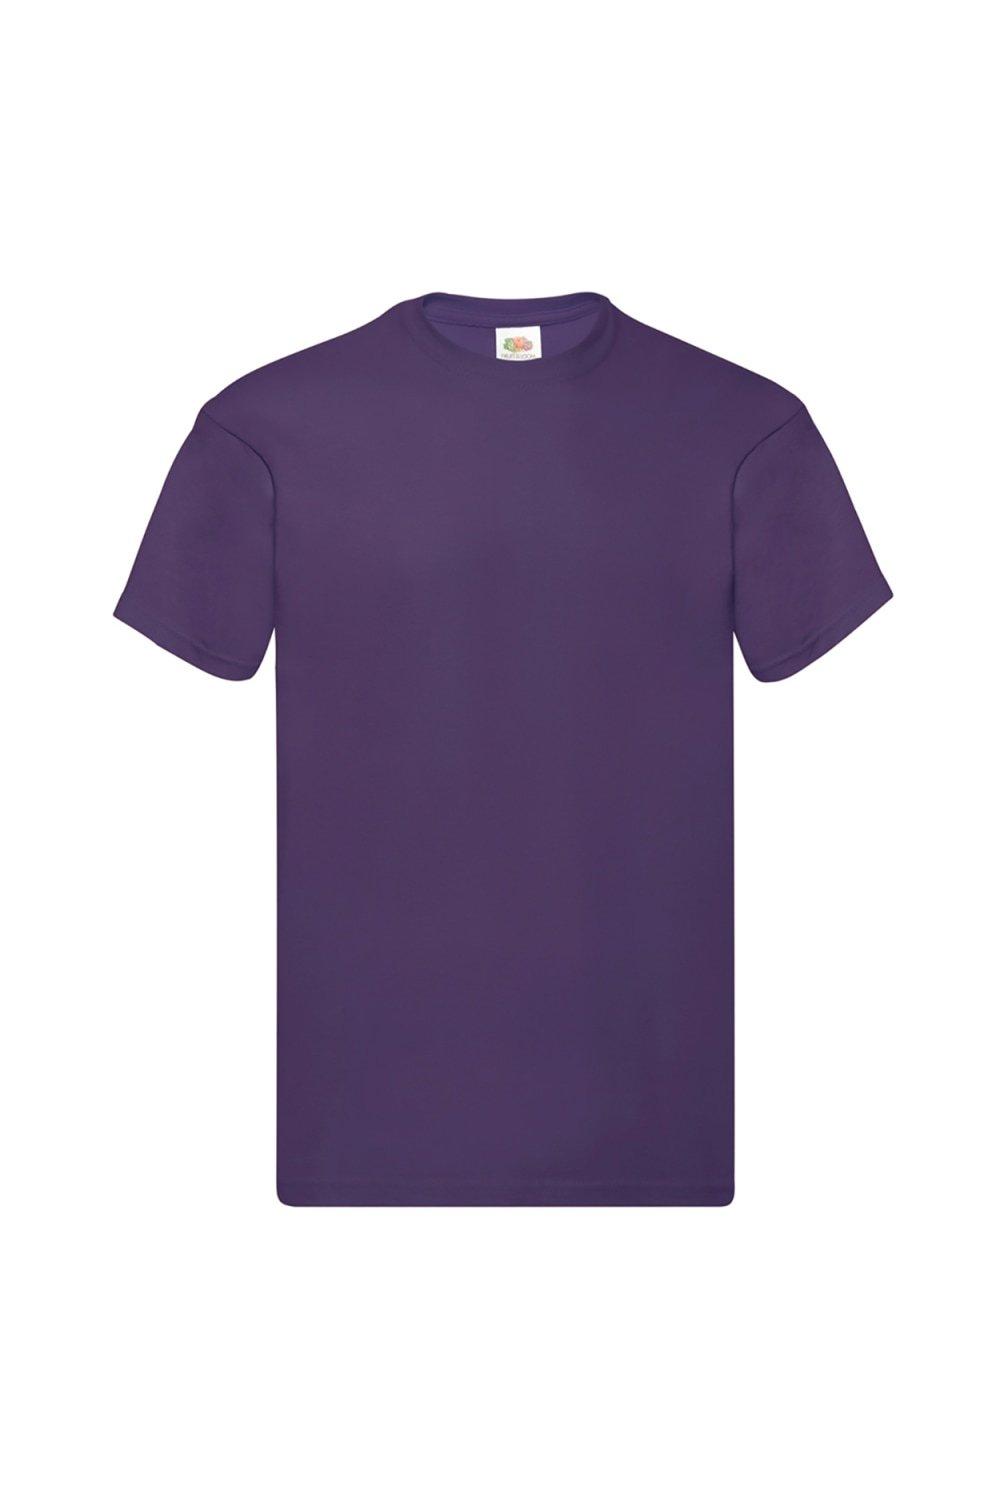 Оригинальная футболка с коротким рукавом Fruit of the Loom, фиолетовый